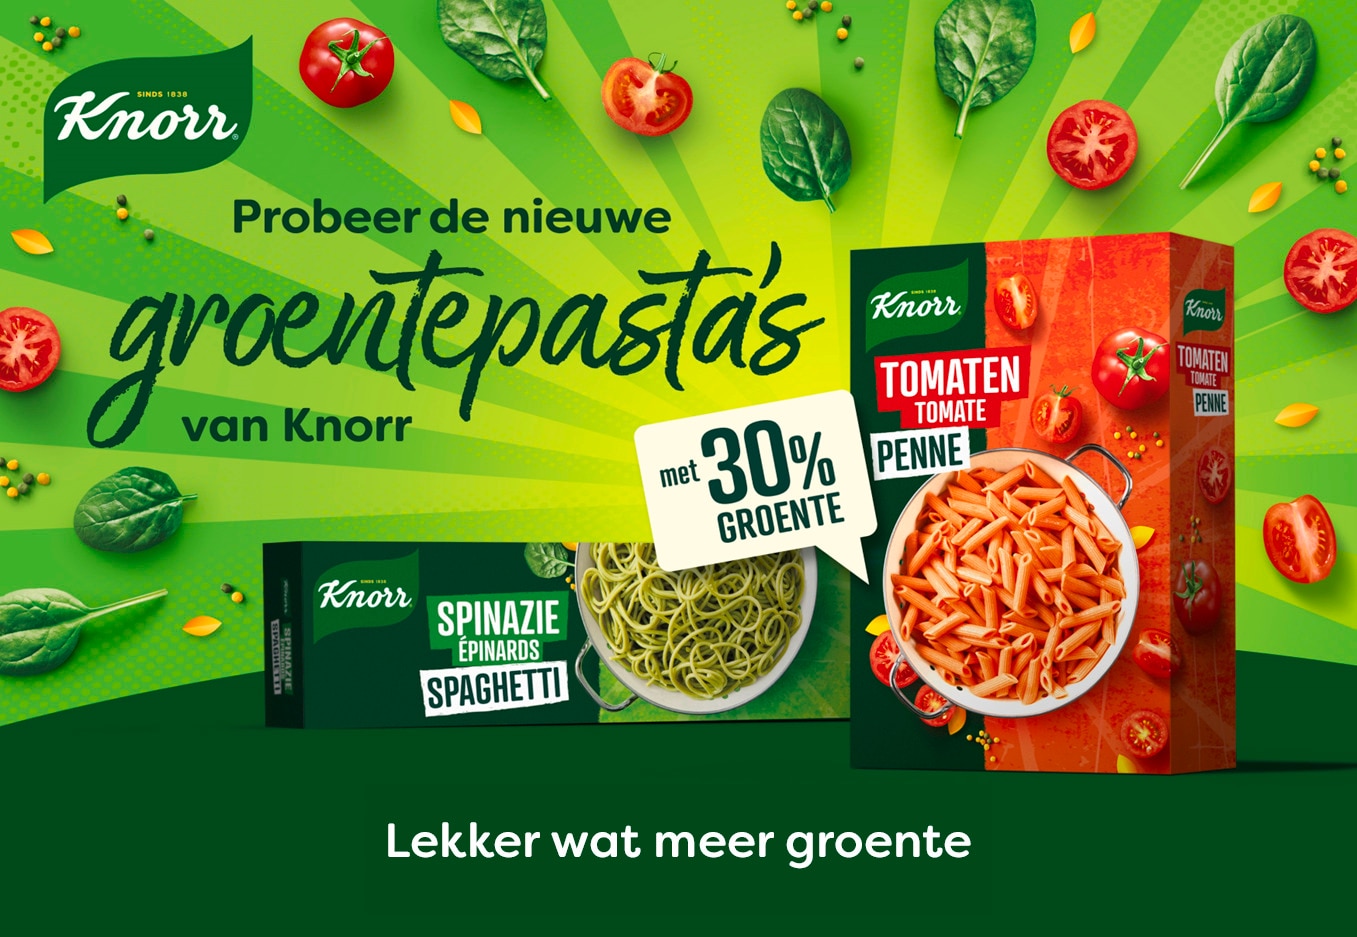 Groentepastas Knorr